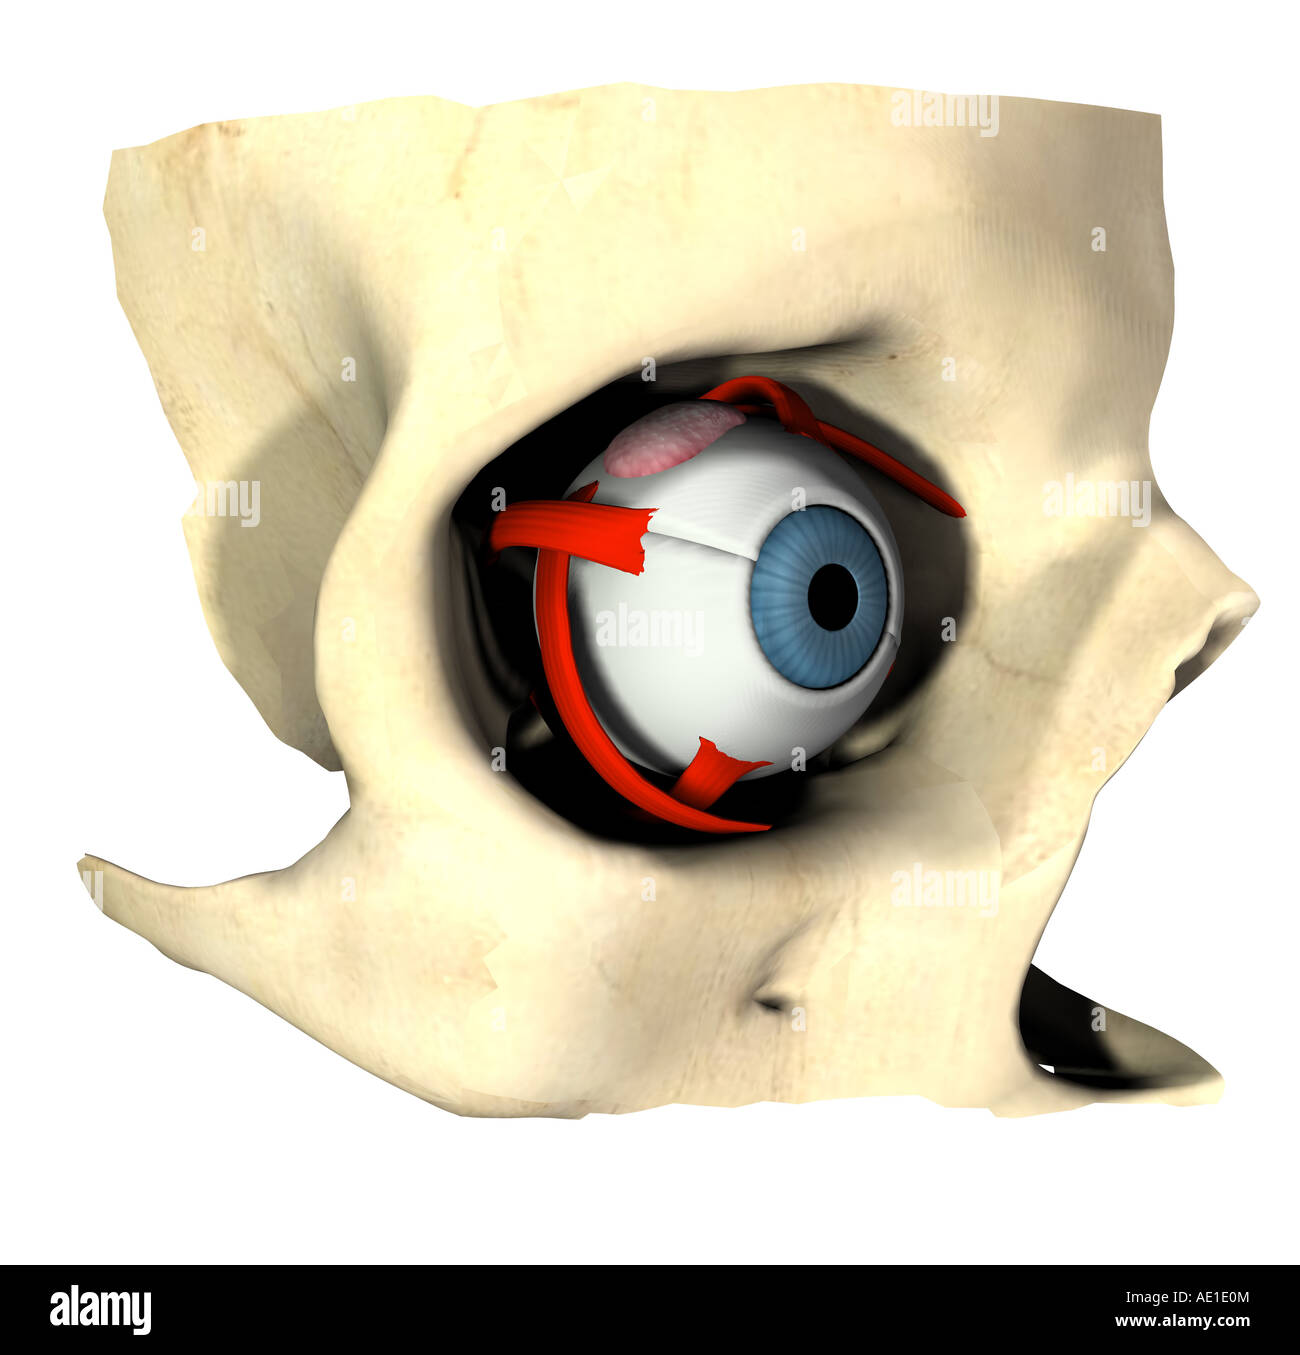 anatomy of the eye Stock Photo